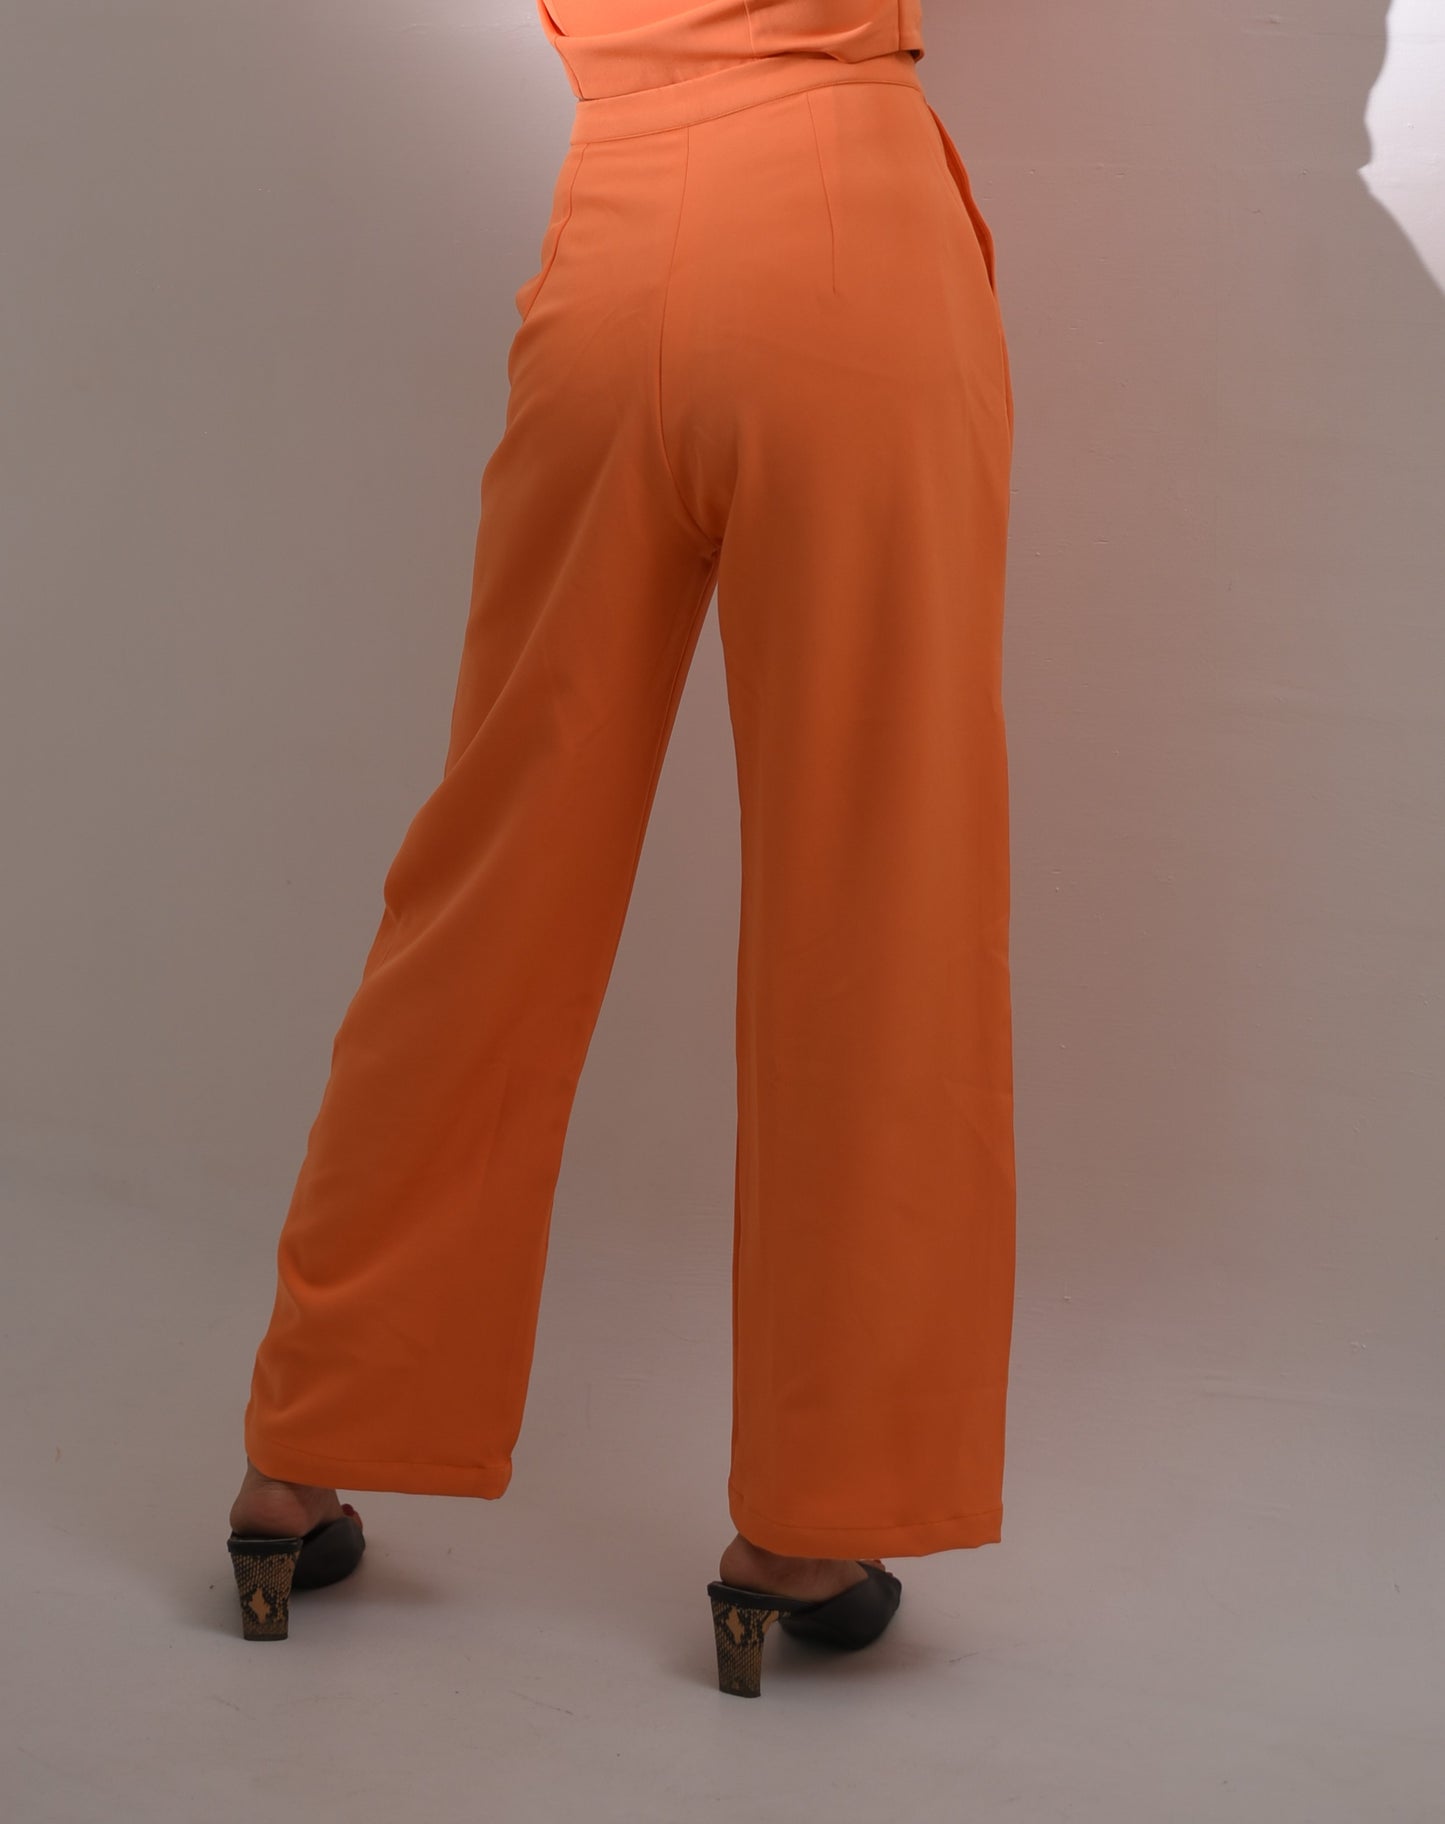 Yuvi - High Rise Straight Trouser